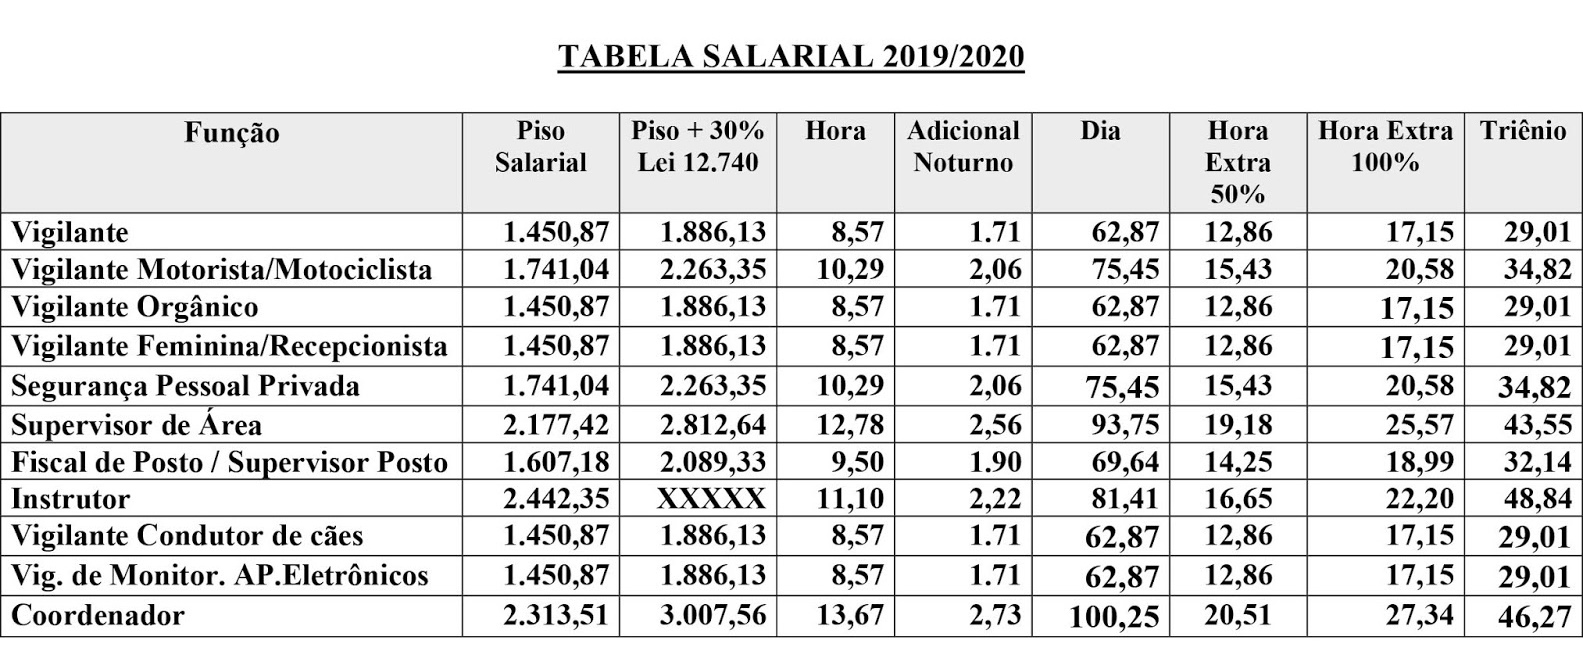 Tabela Salarial 2019/2020